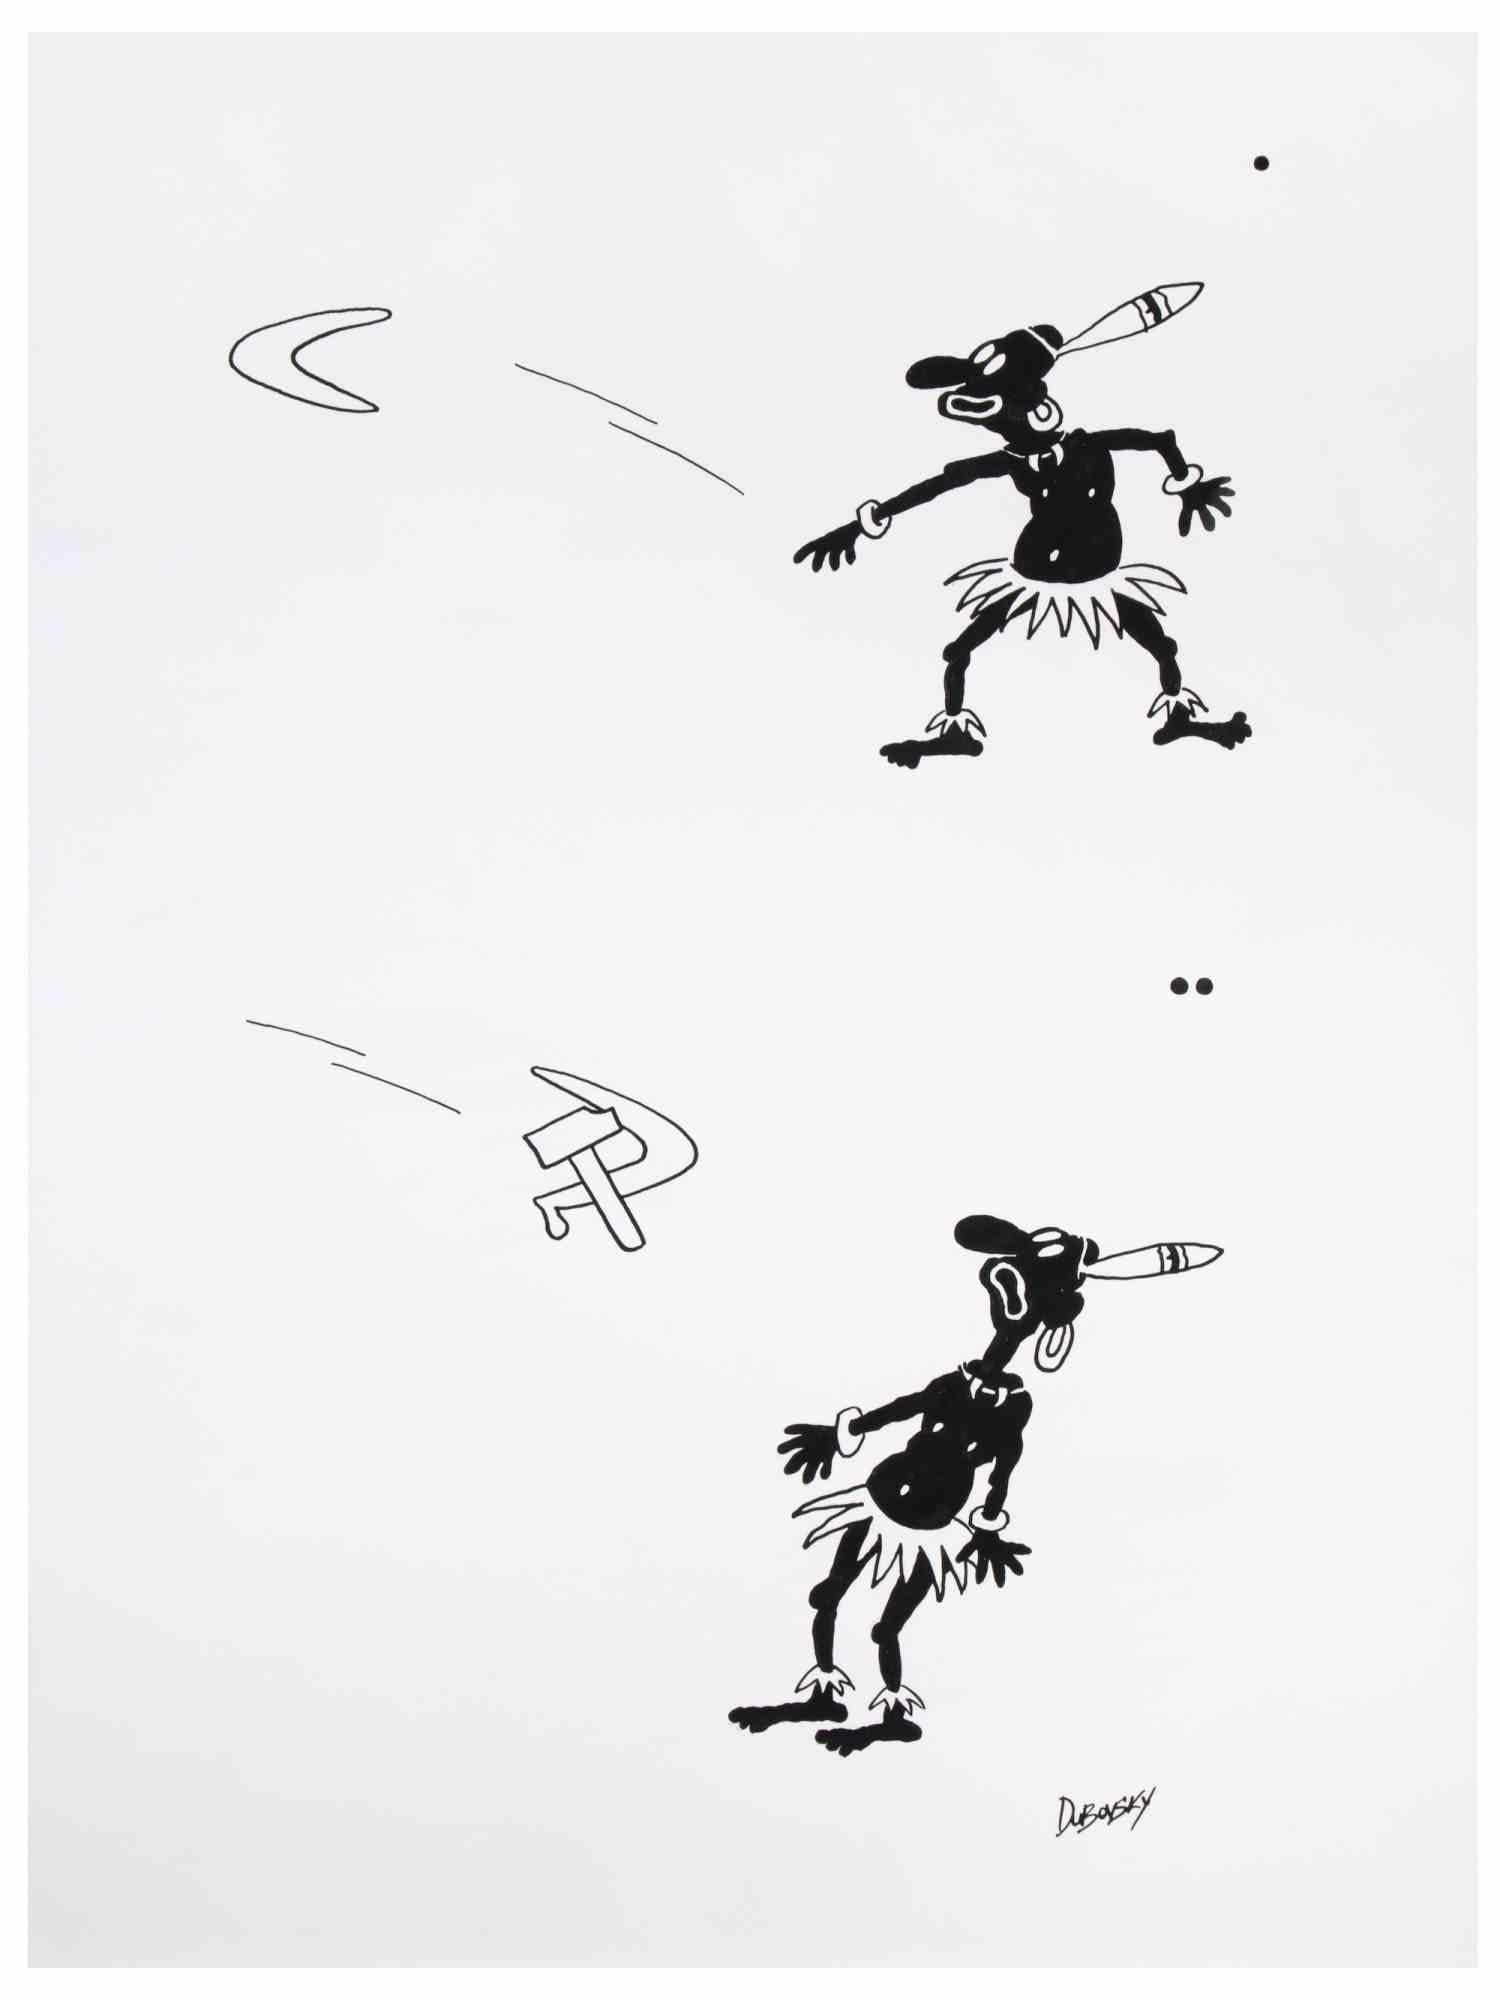 Tribal Boomerang ist ein Zeichenkunstwerk von Alexander Dubovsky aus den 1980er Jahren.

Aquarell und Tuschezeichnung auf Papier.

Rechts unten handsigniert.

Der Erhaltungszustand ist gut.